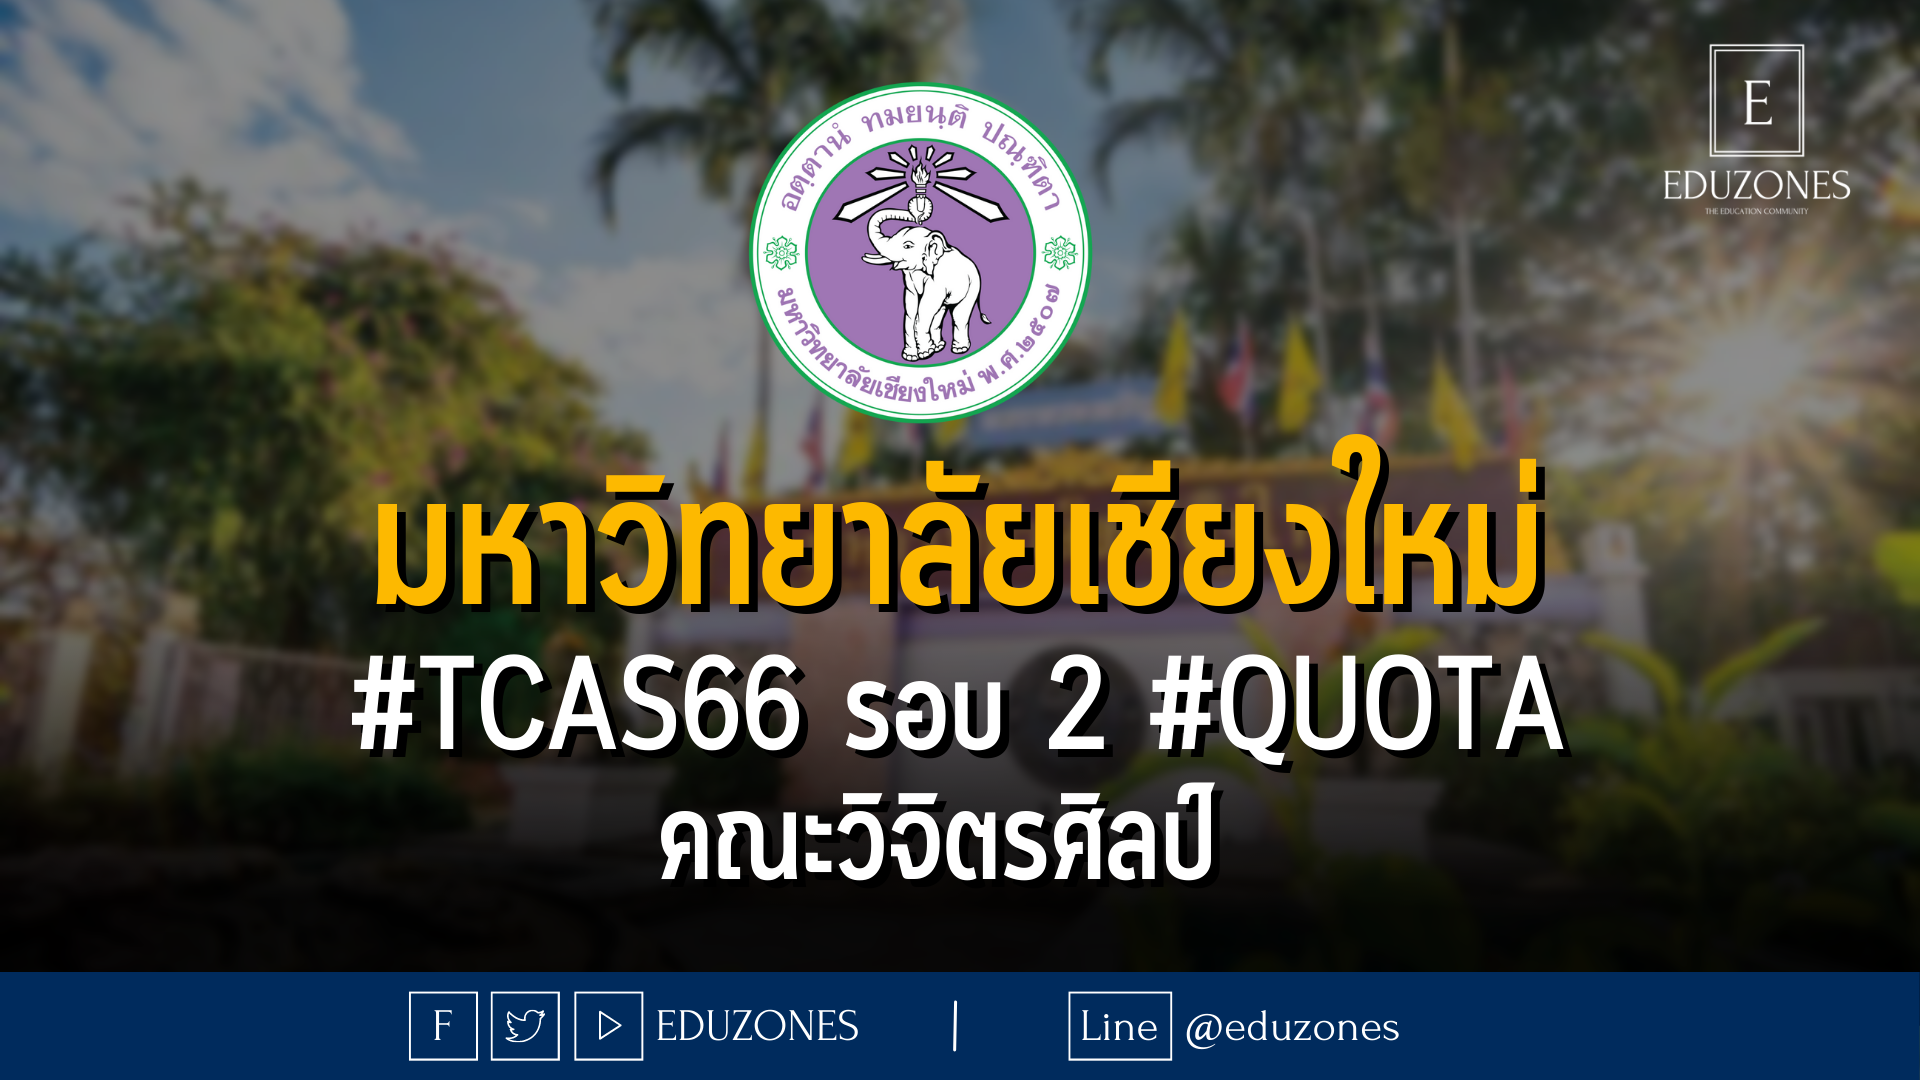 มหาวิทยาลัยเชียงใหม่ #TCAS66 รอบ 2 #QUOTA คณะวิจิตรศิลป์  - 14 - 23 กุมภาพันธ์ 2566